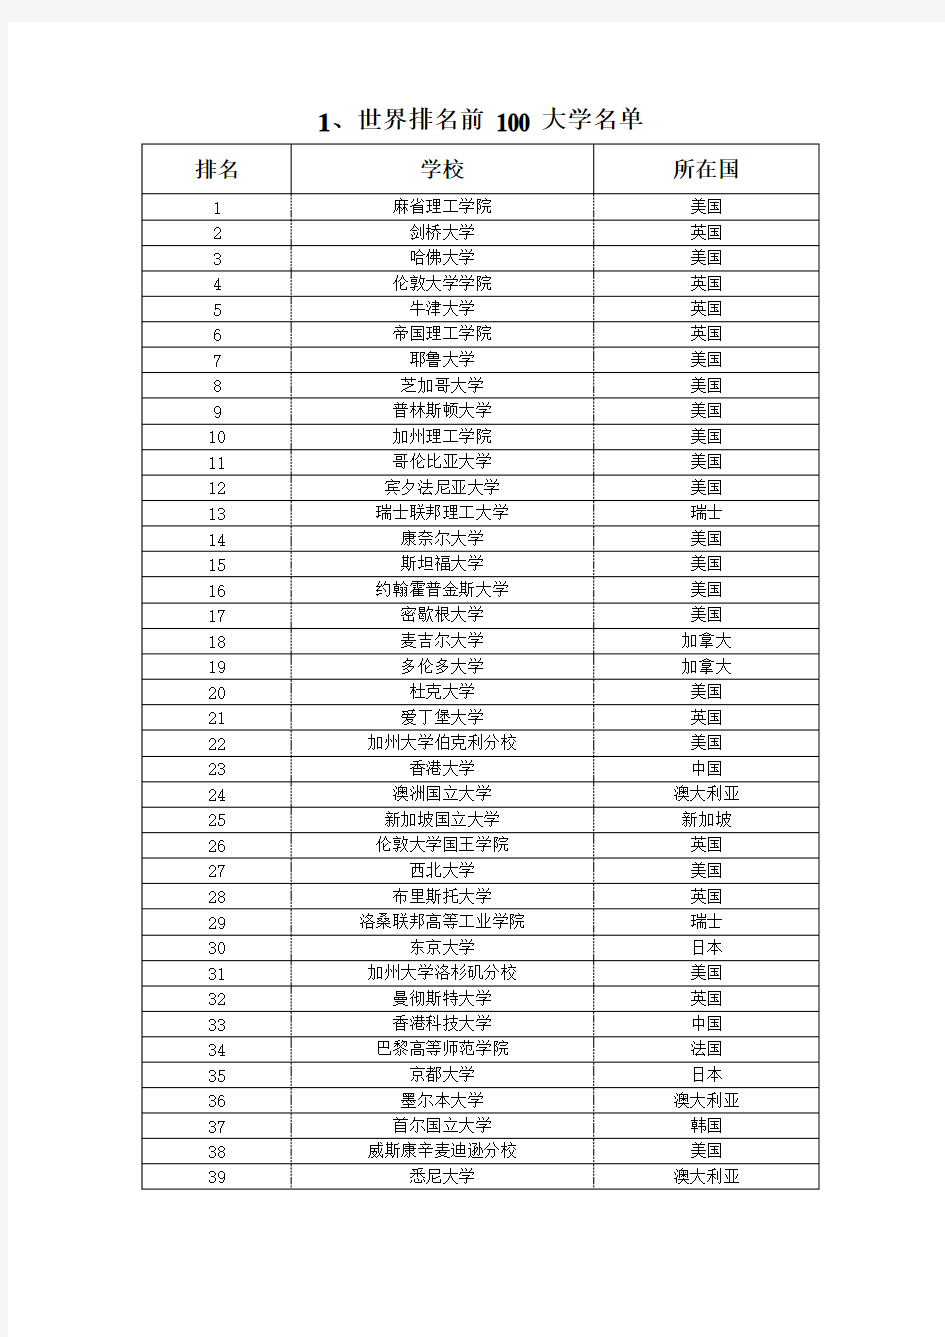 世界大学排名、中国985、211院校名录与大学正规专业分类